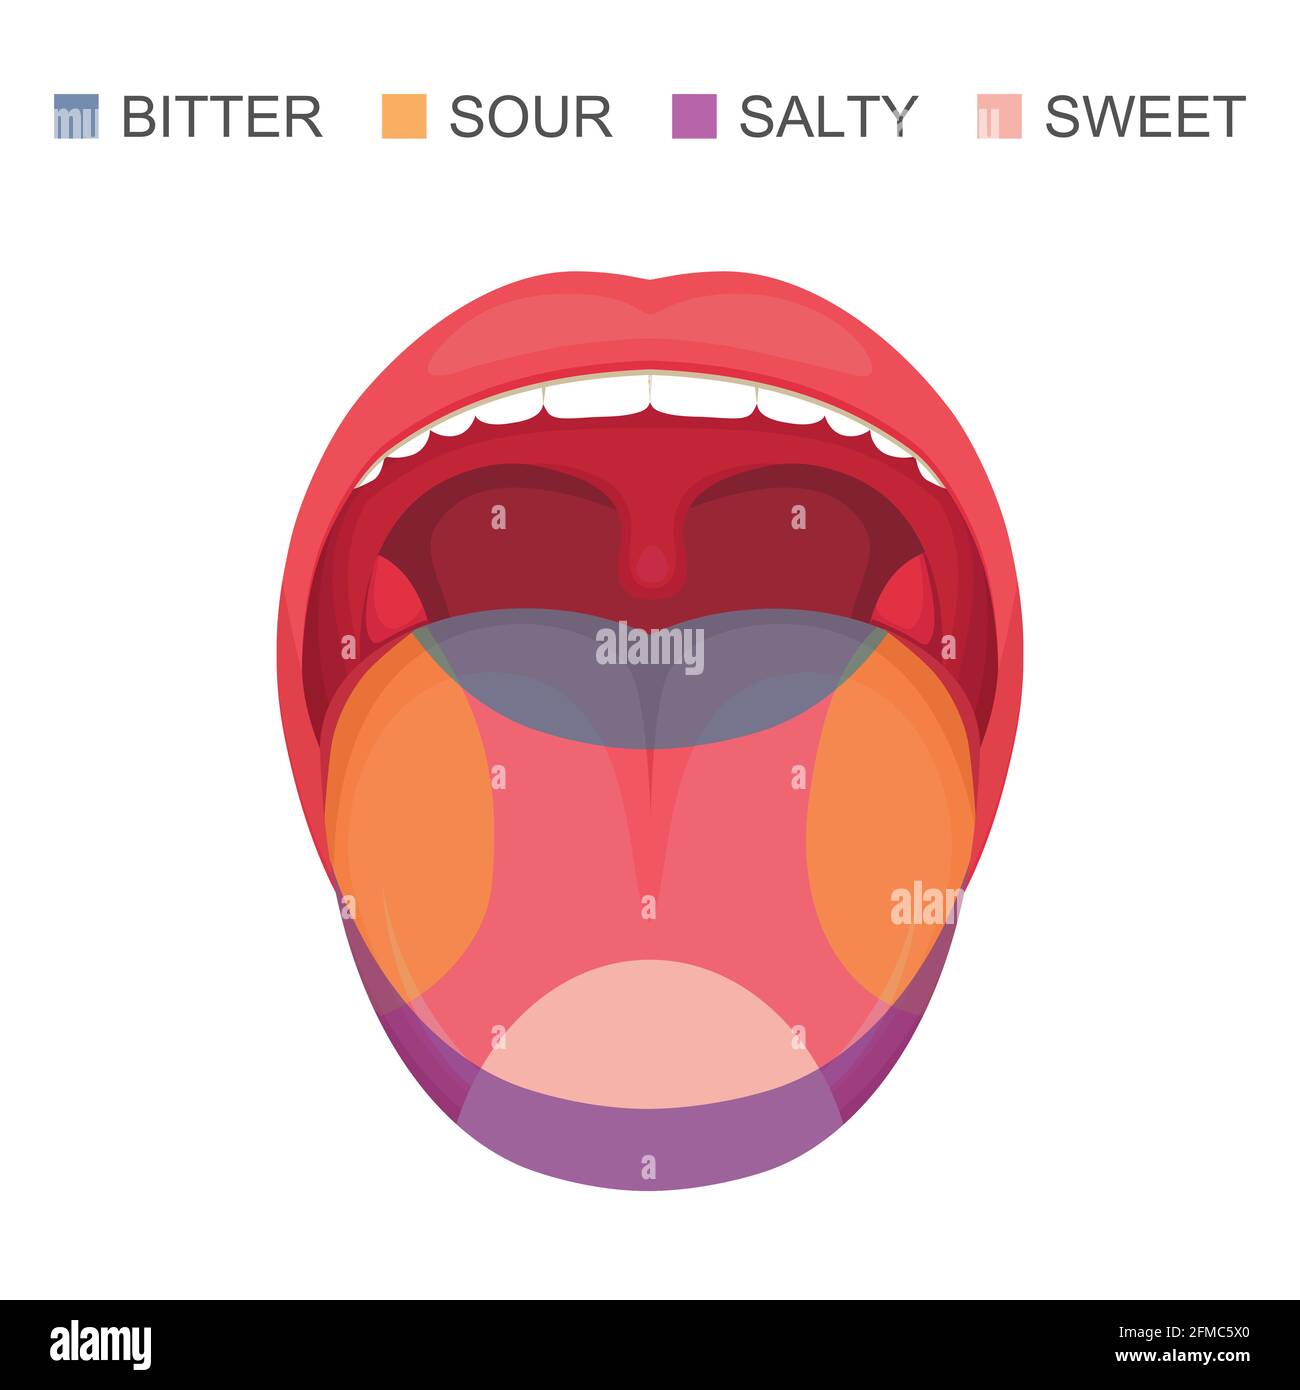 vektor-Illustration einer grundlegenden Geschmacksbereiche auf der menschlichen Zunge, sauer, süß, bitter und salzig. Sense-Zone Stock Vektor